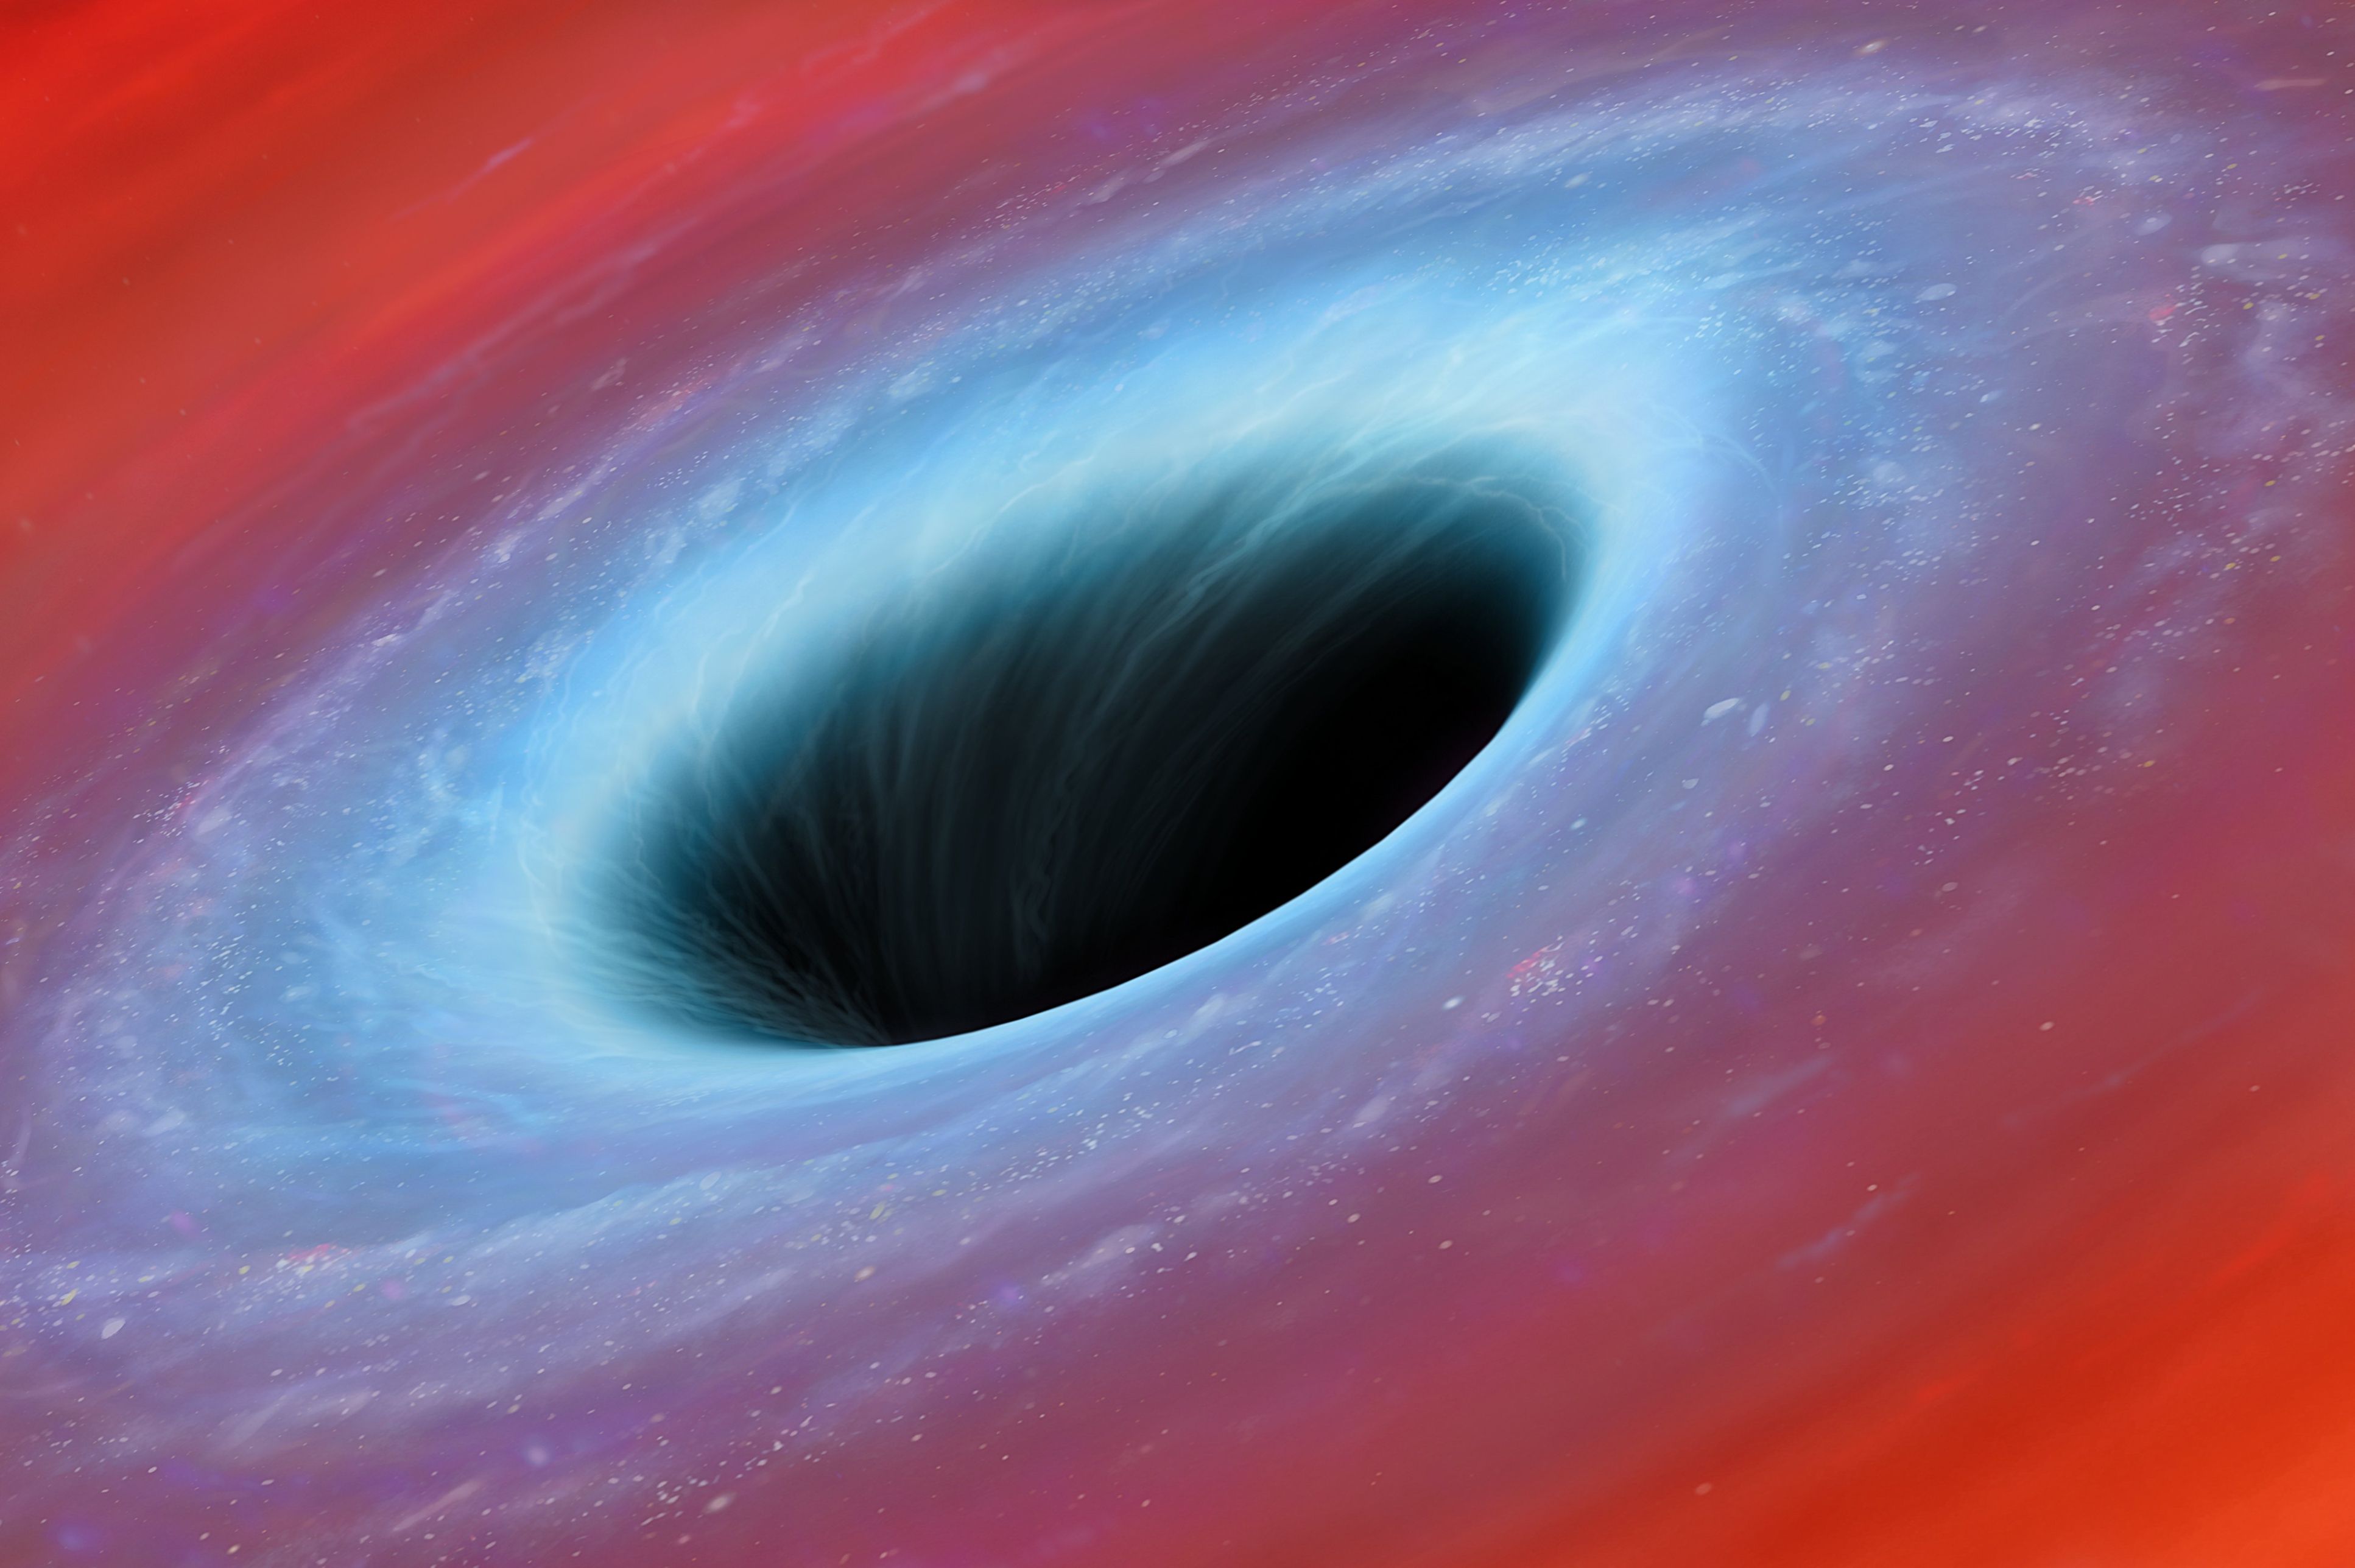 black hole illustration .jpg (480 KB)